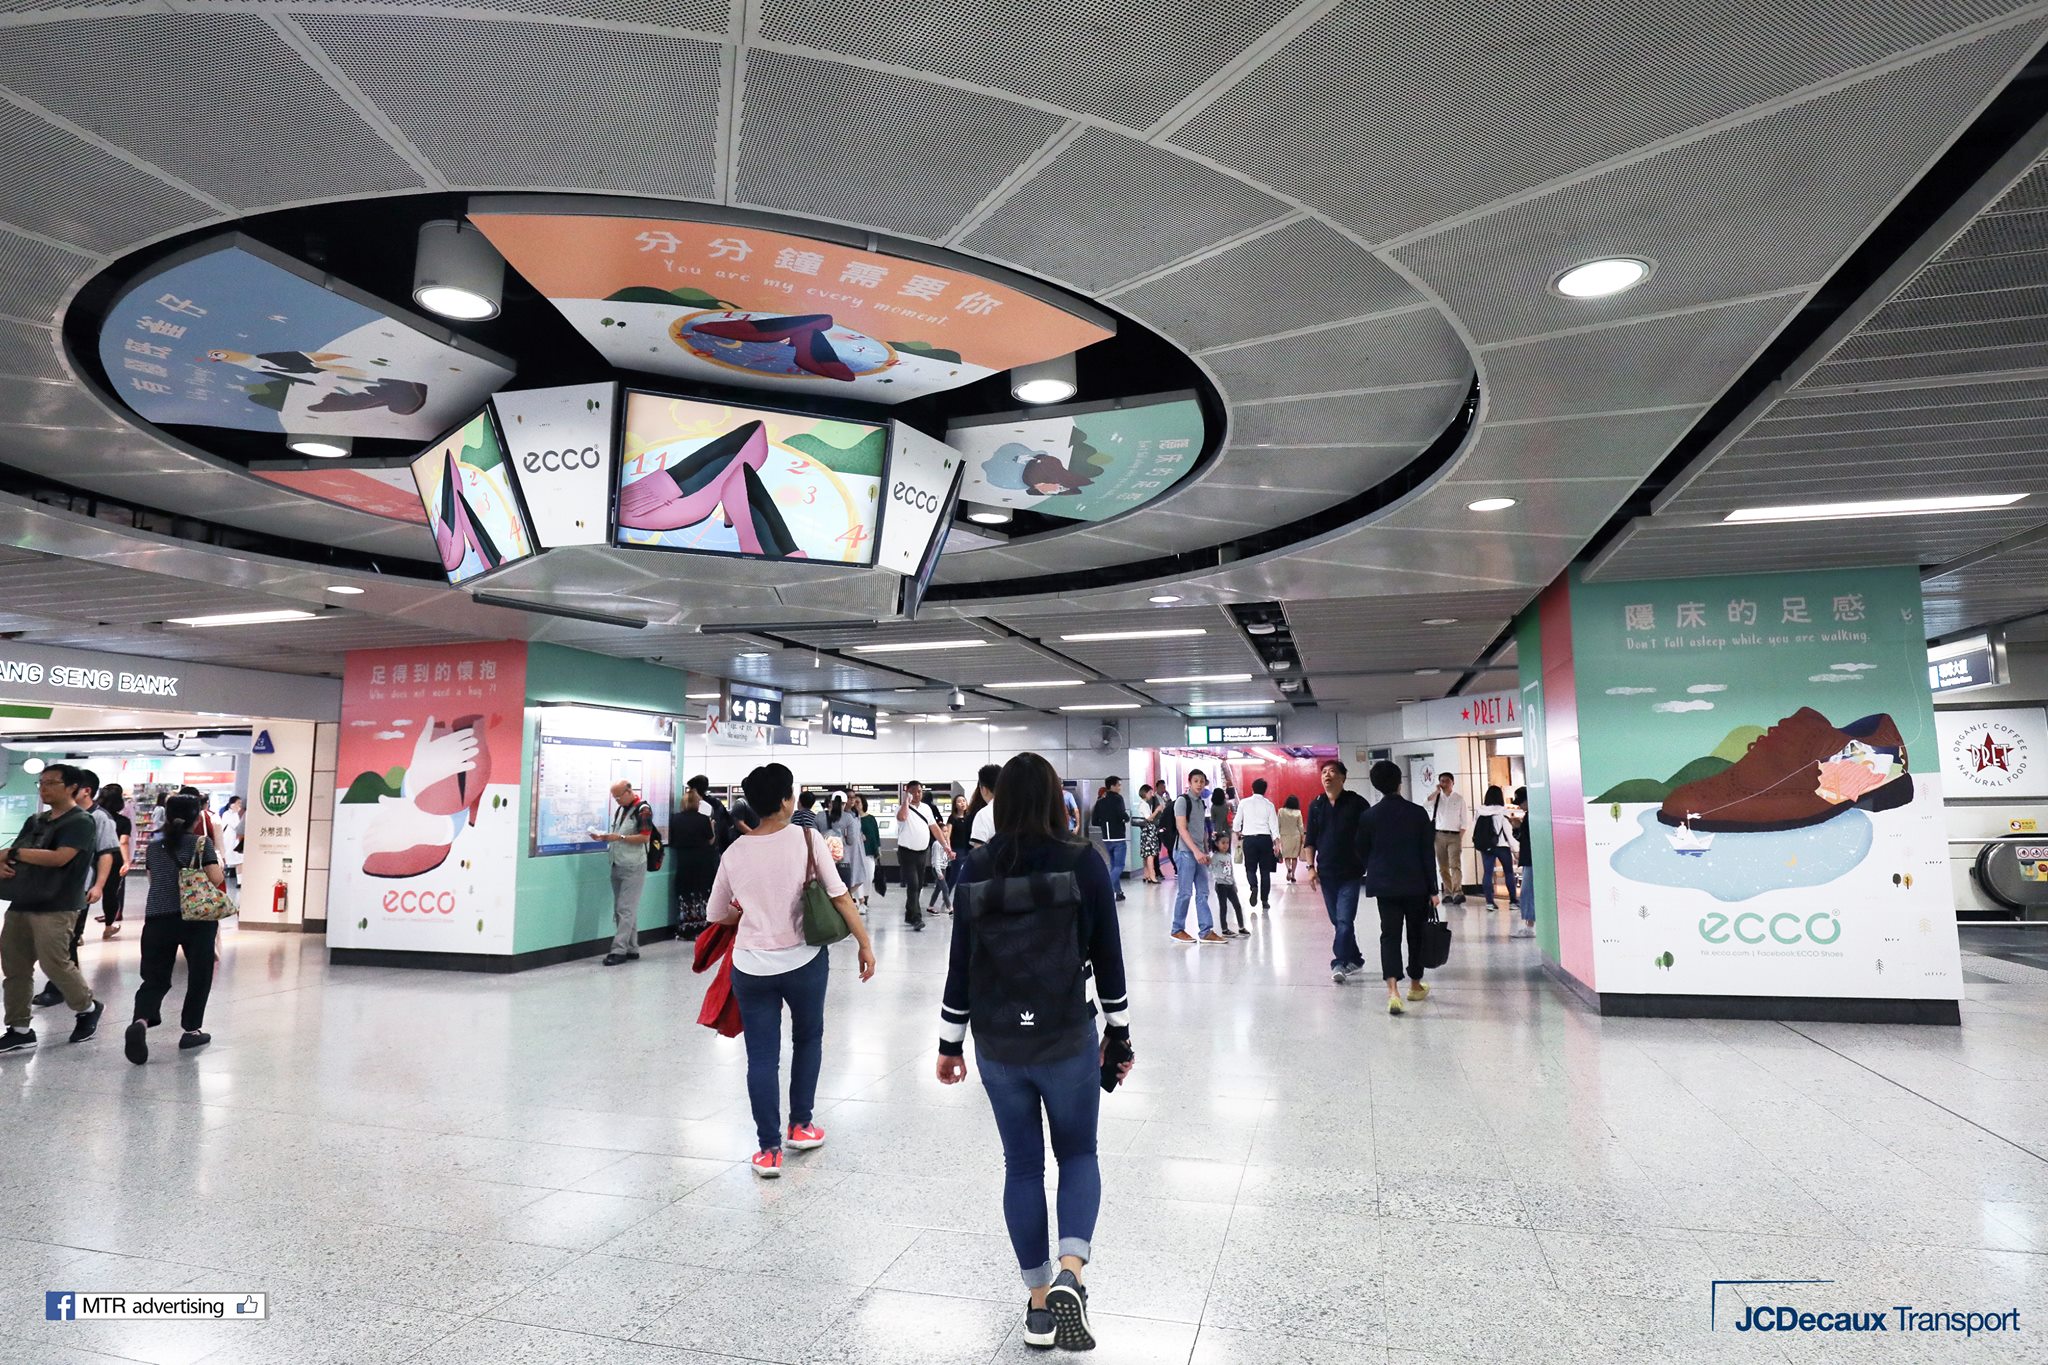 金奖作品「足感一试‧分享」在港铁中环站展示了整整一个星期。(照片来源：JCDecaux Transport)